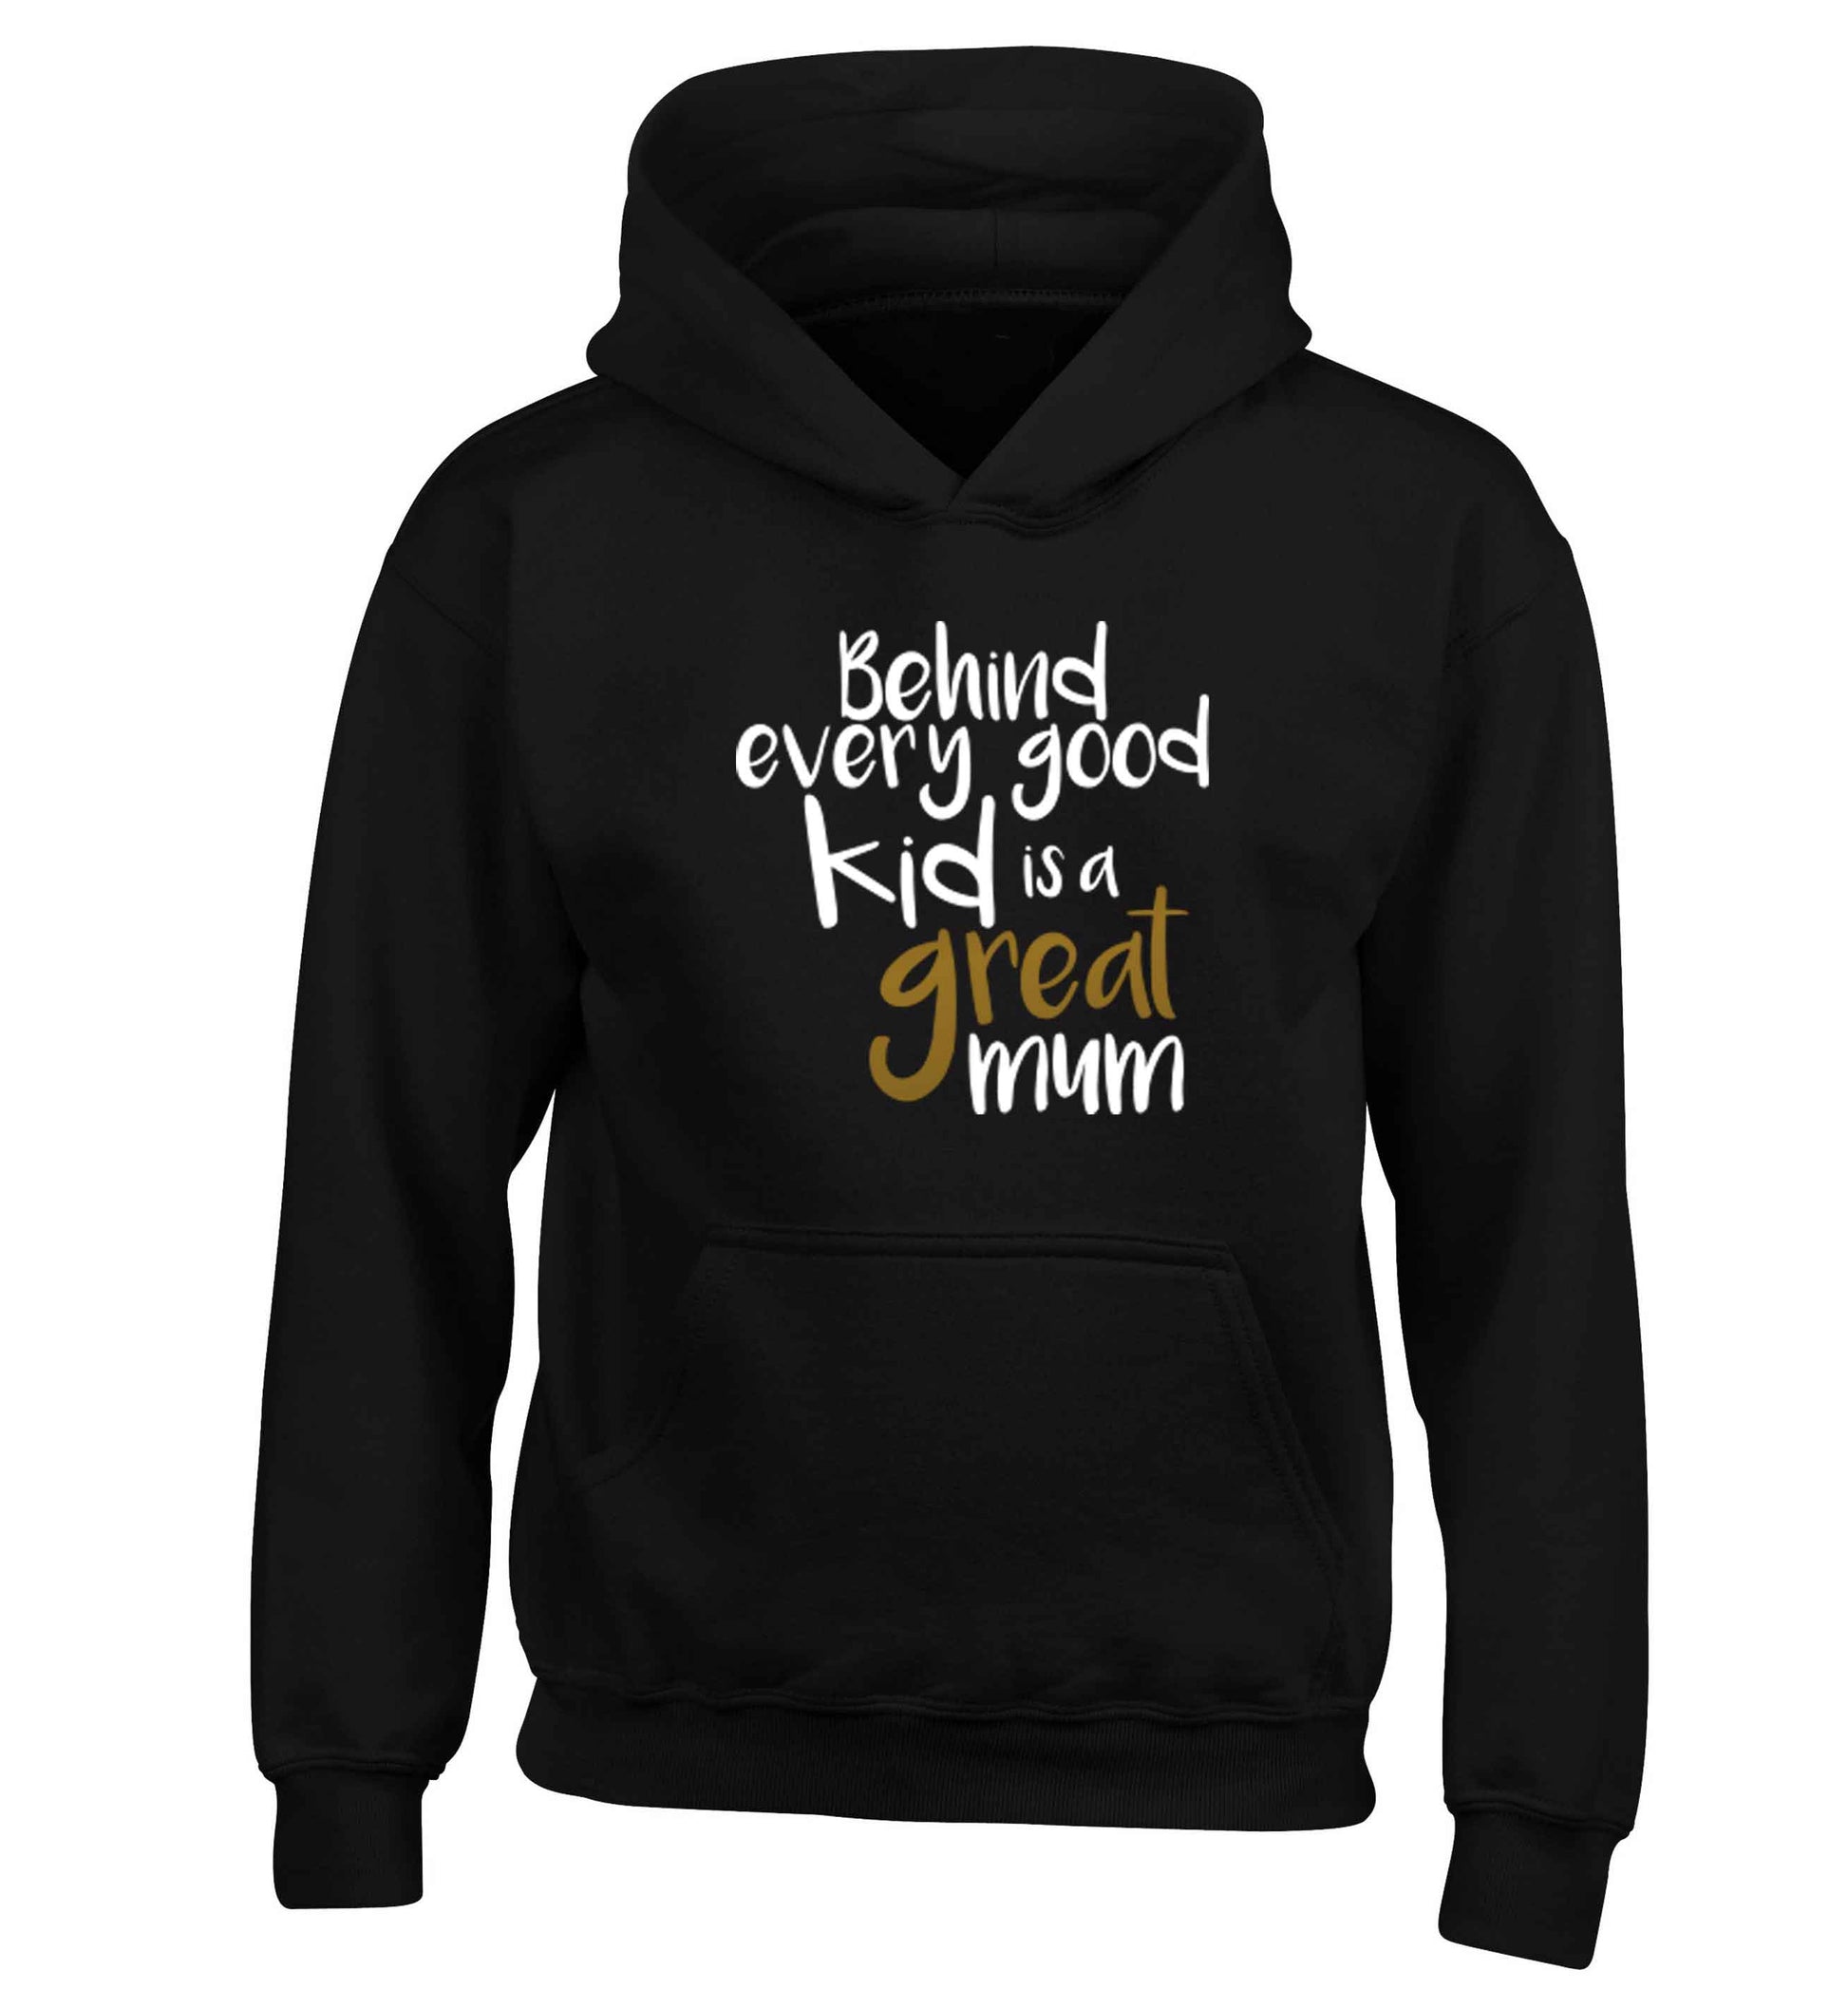 Behind every good kid is a great mum children's black hoodie 12-13 Years